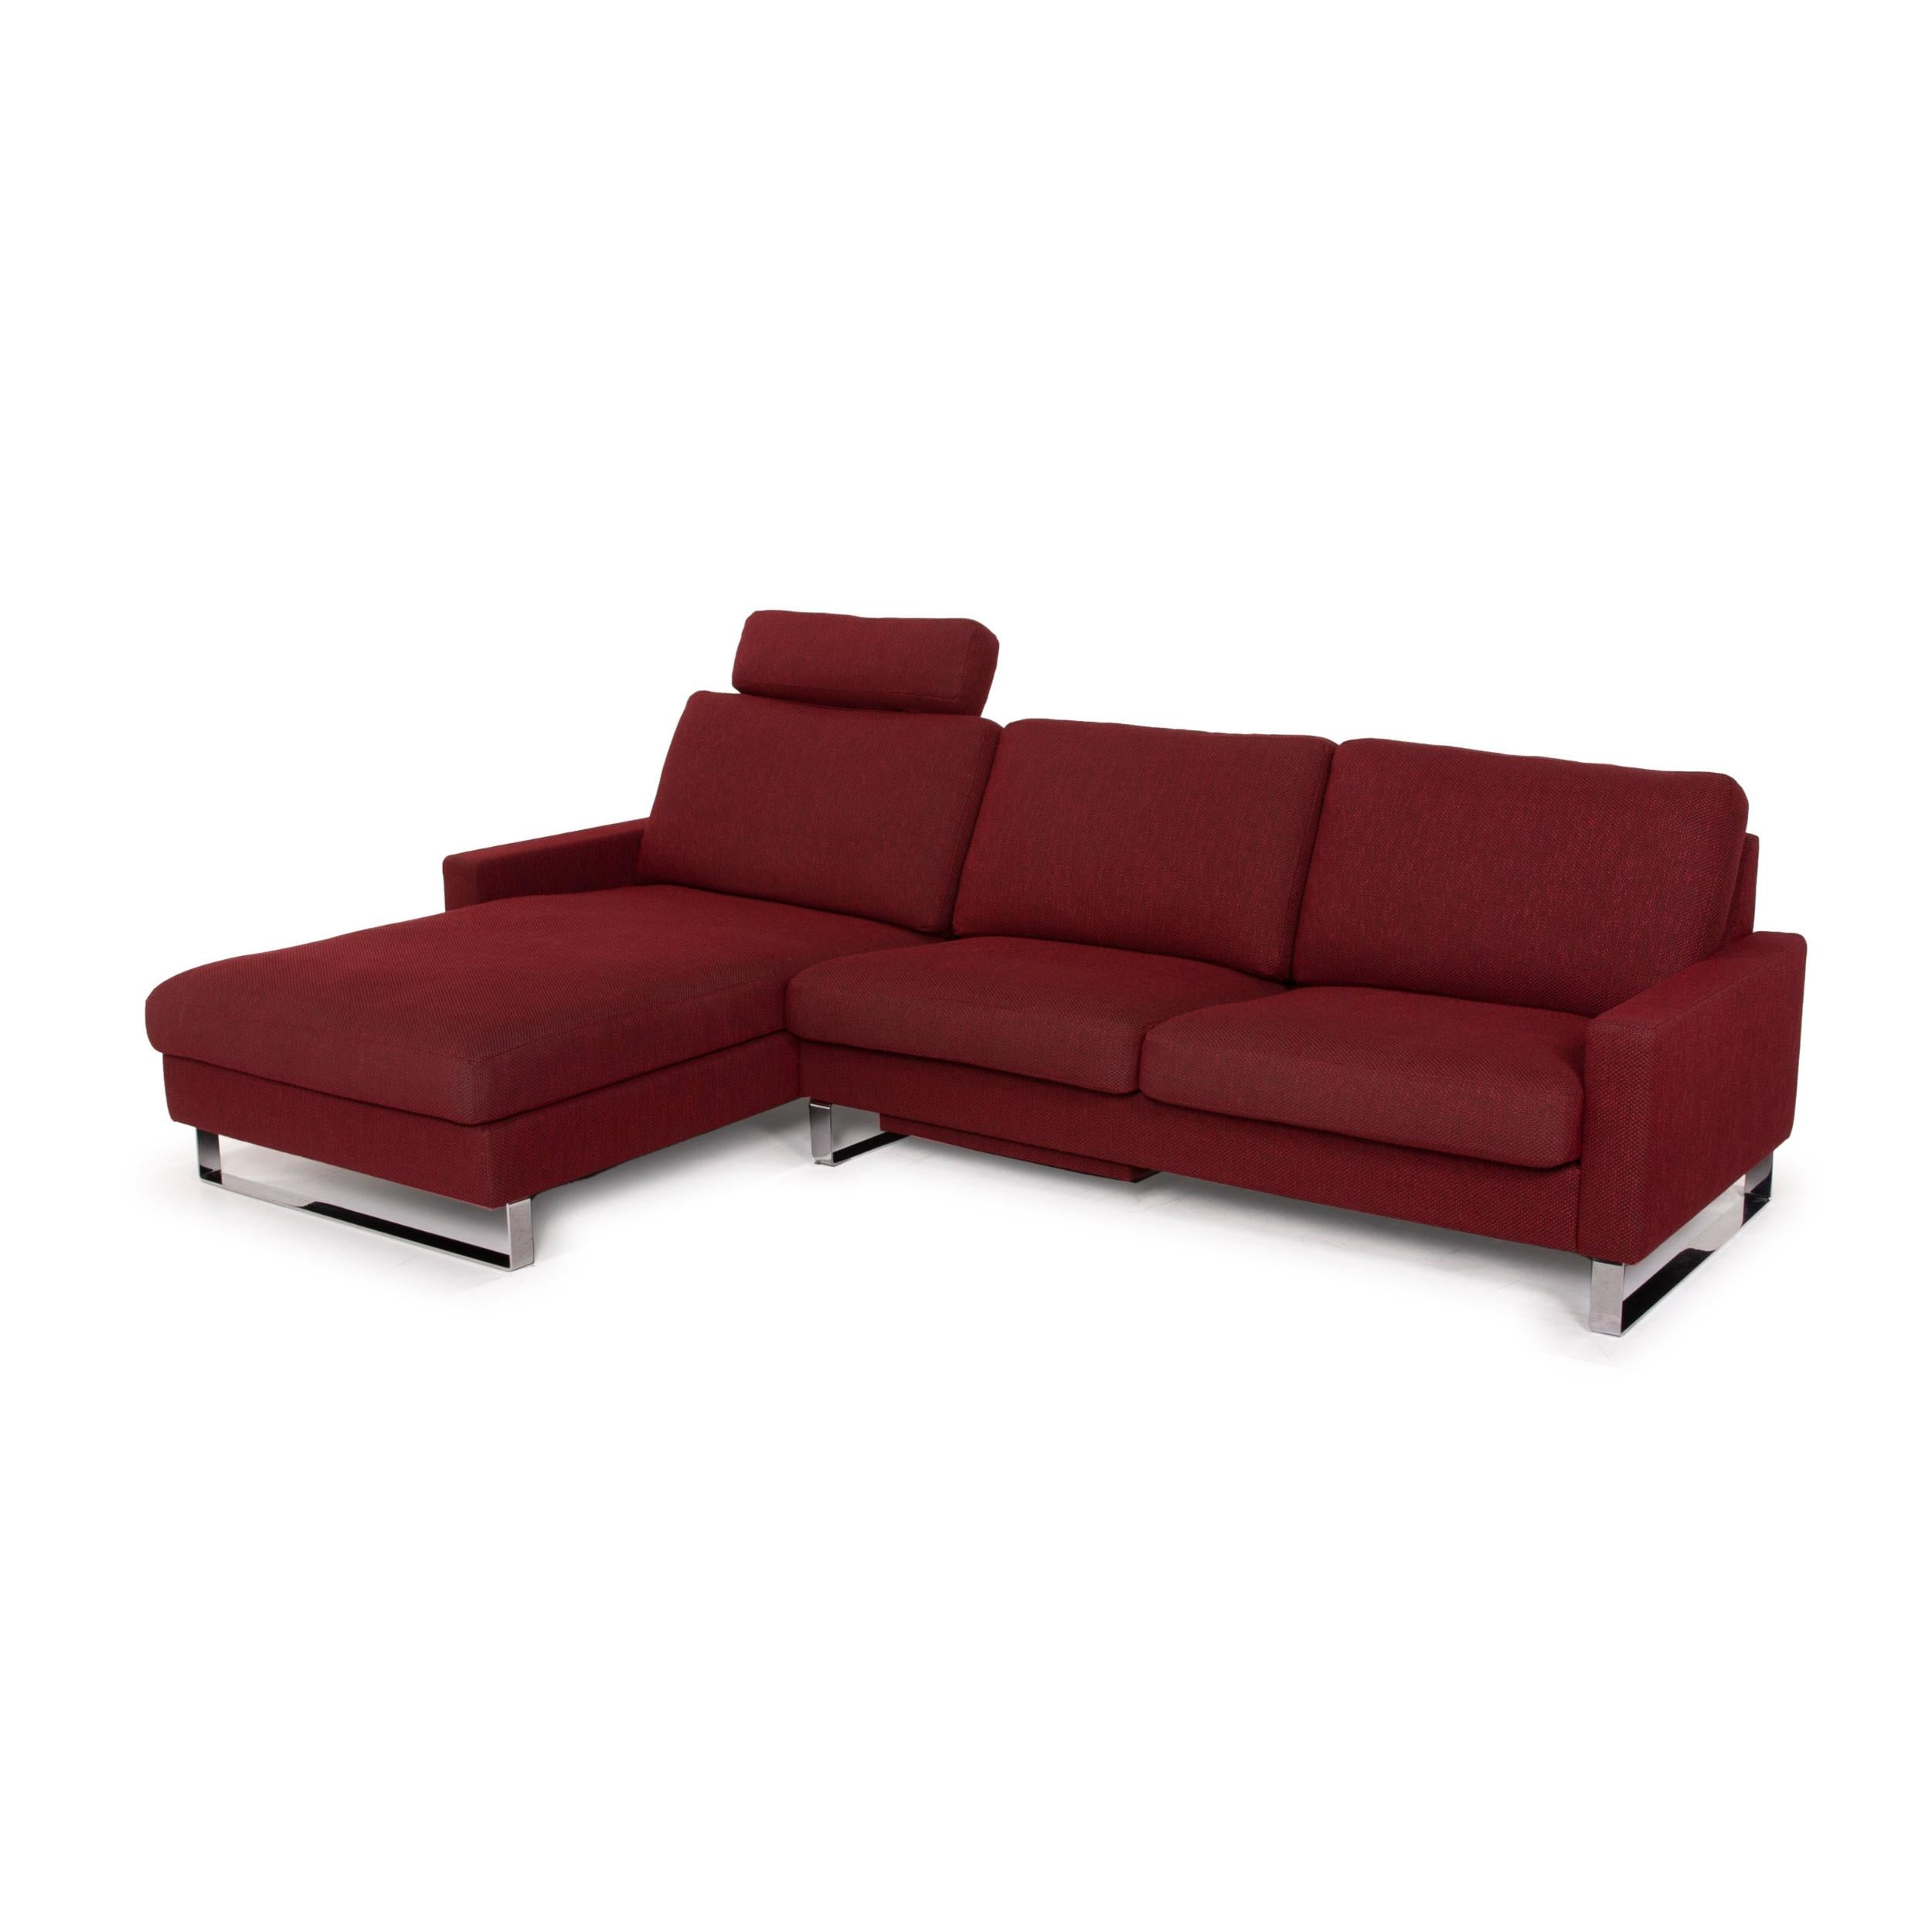 Erpo CL 500 Fabric Sofa Red Corner Sofa In Good Condition In Cologne, DE